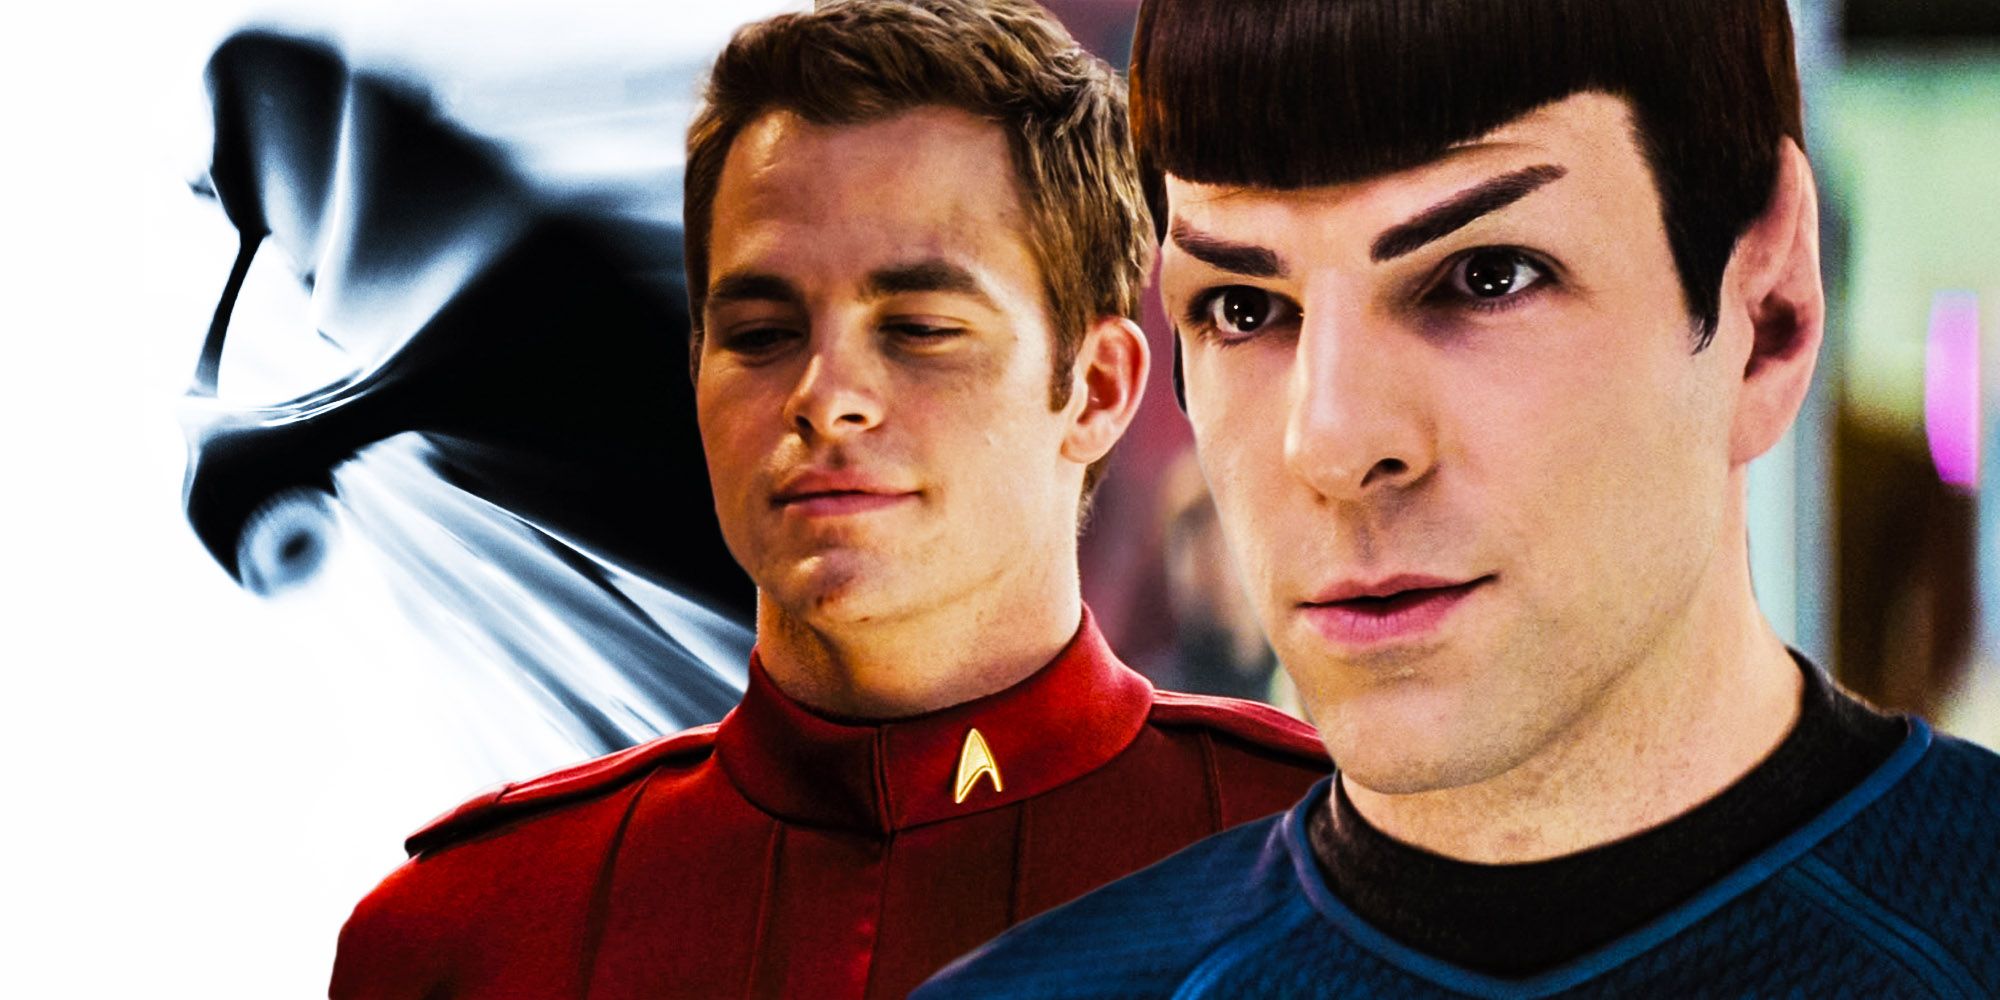 Chris Pine & Zachary Quinto’s Kirk & Spock Are “Lennon and McCartney”, Say Star Trek Writer